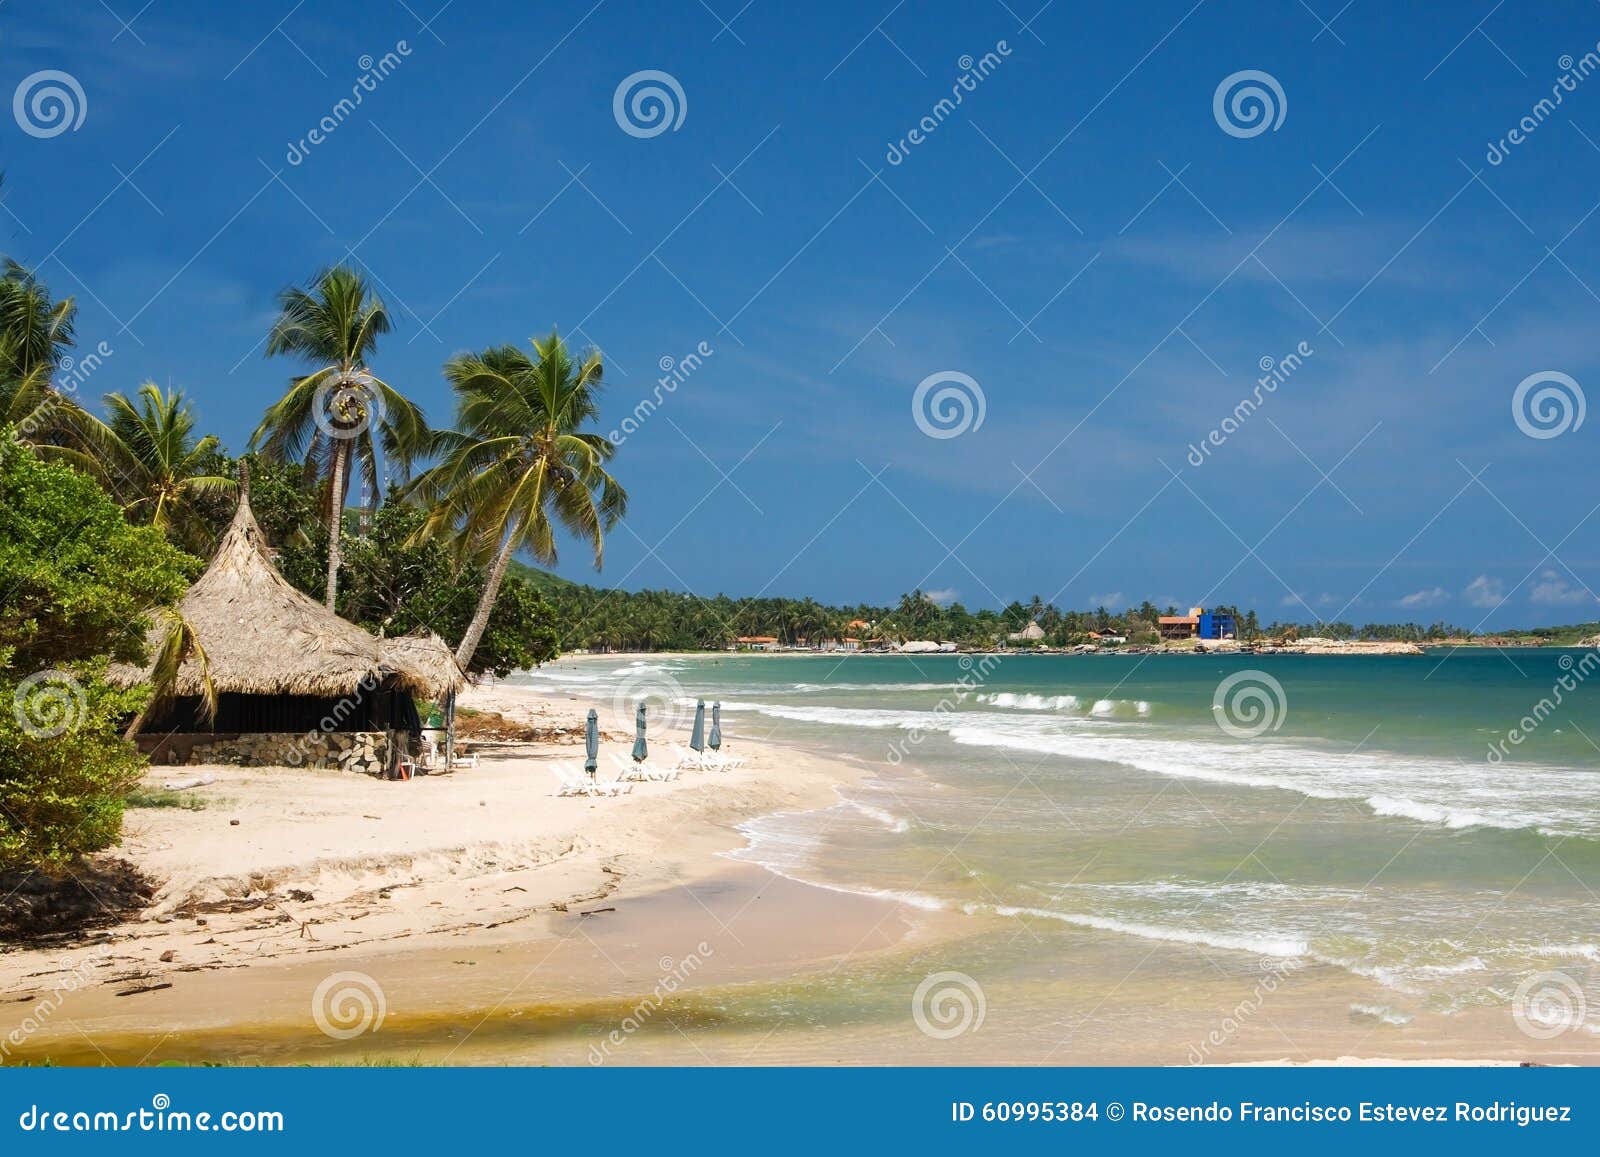 beach on margarita island, caribbean sea, venezuela